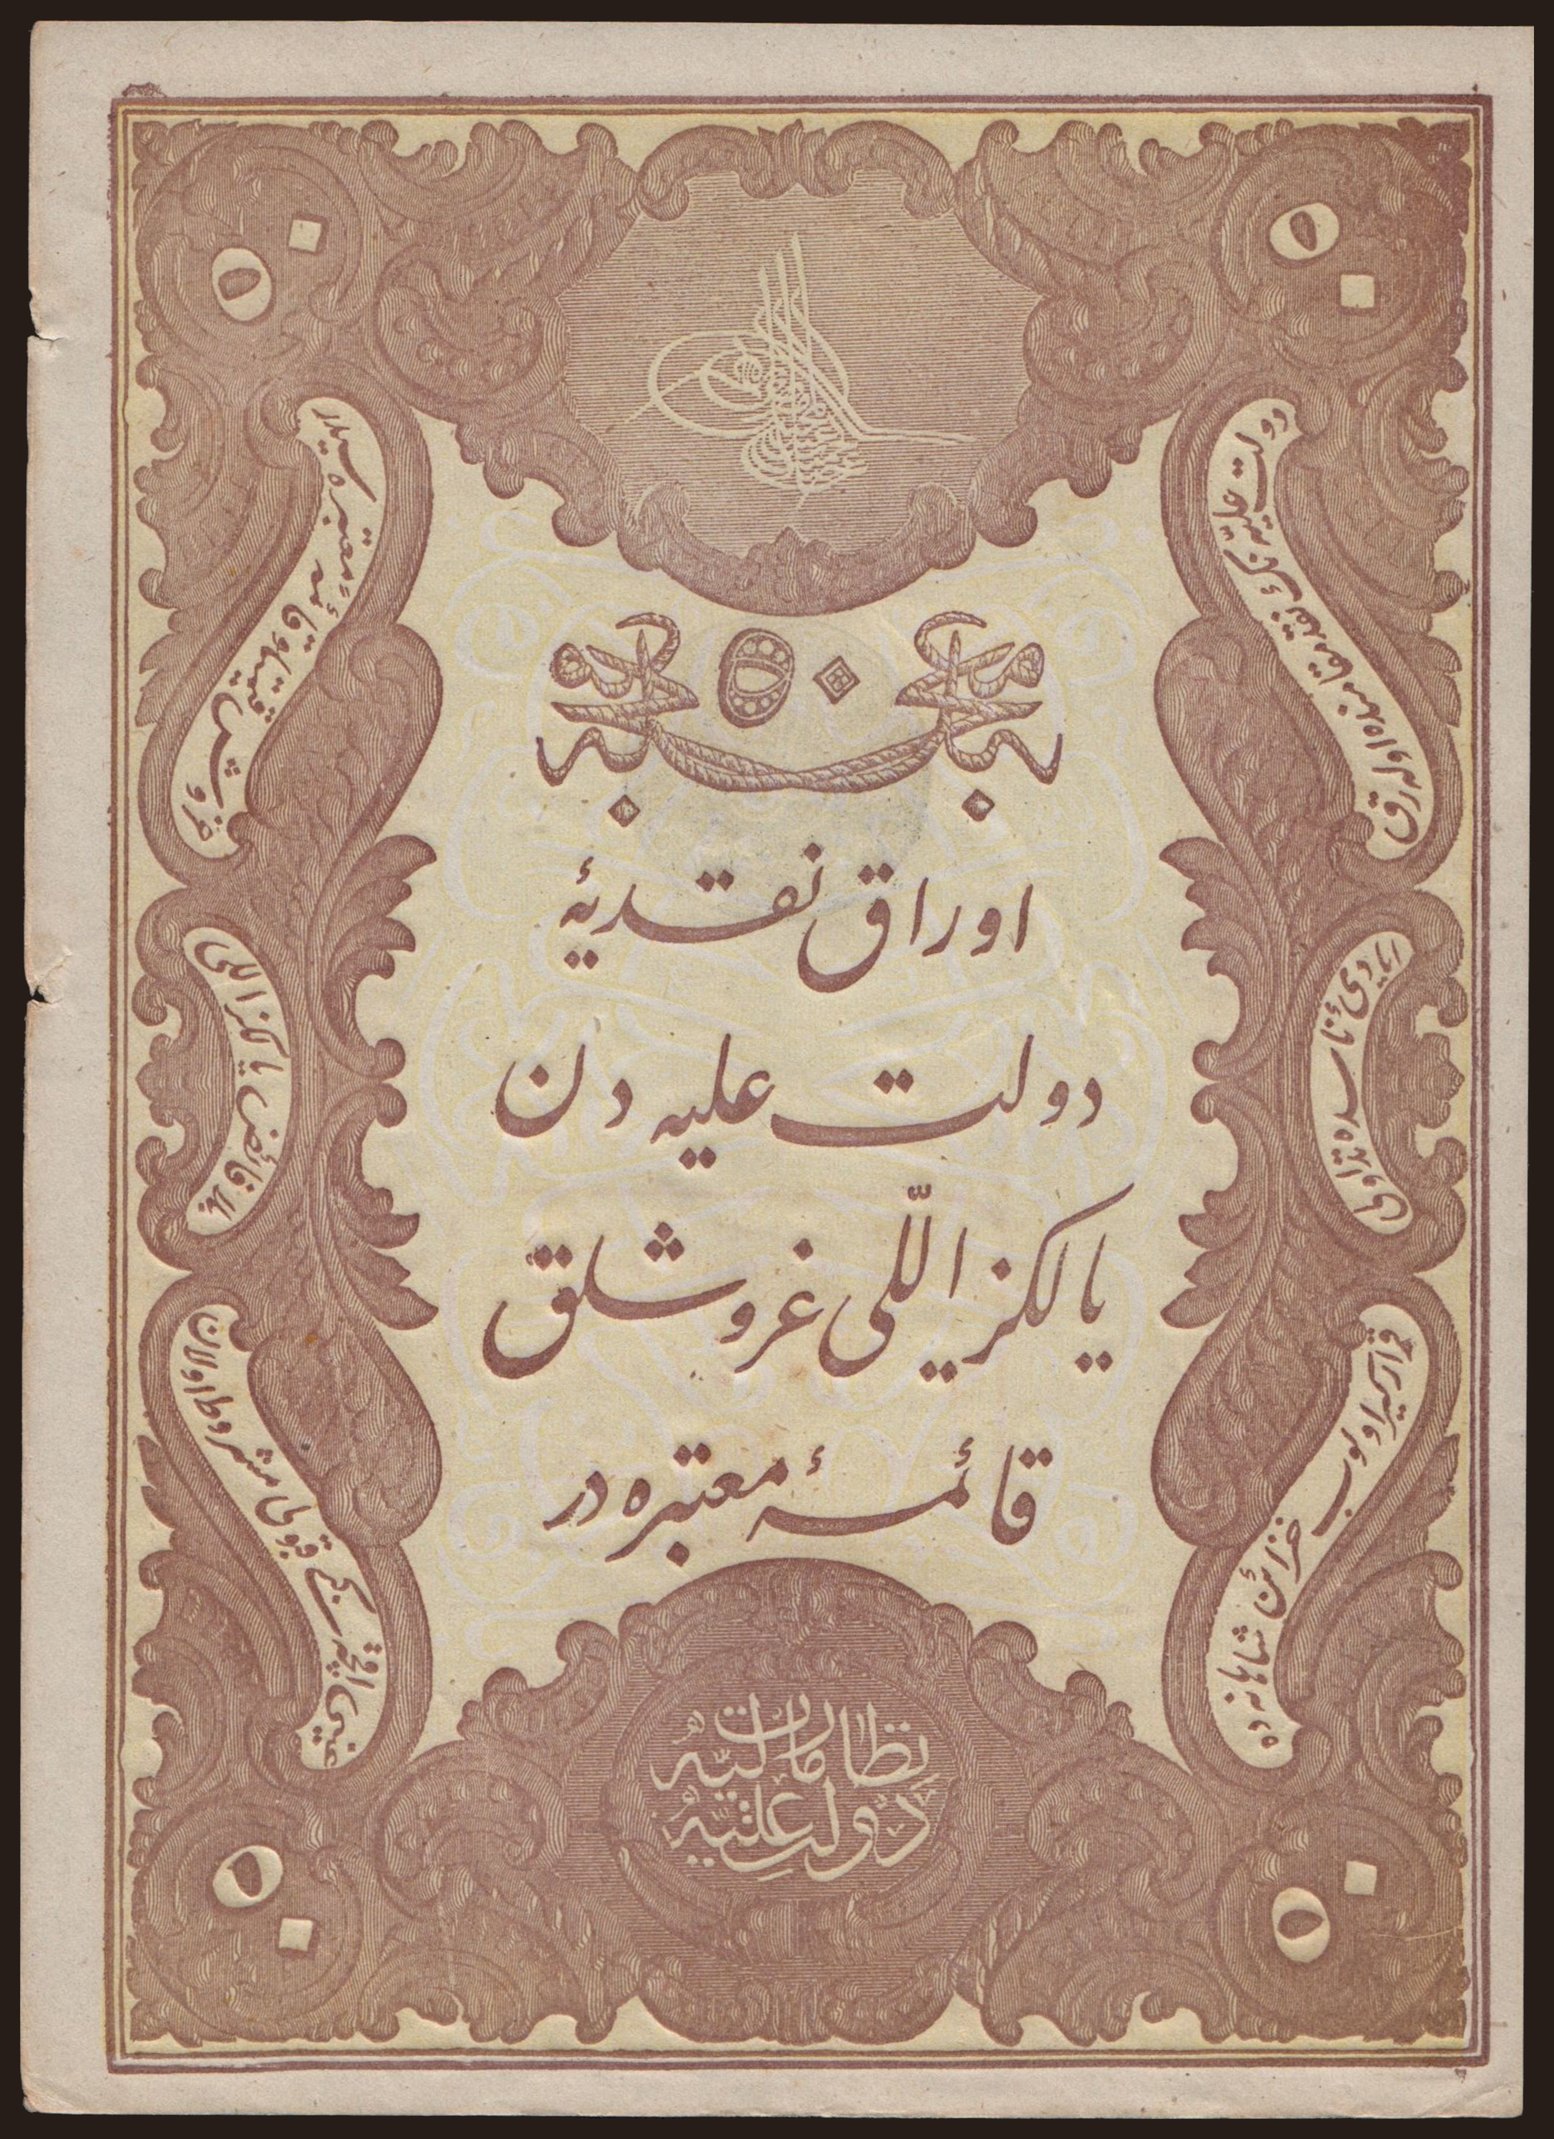 50 kurush, 1877